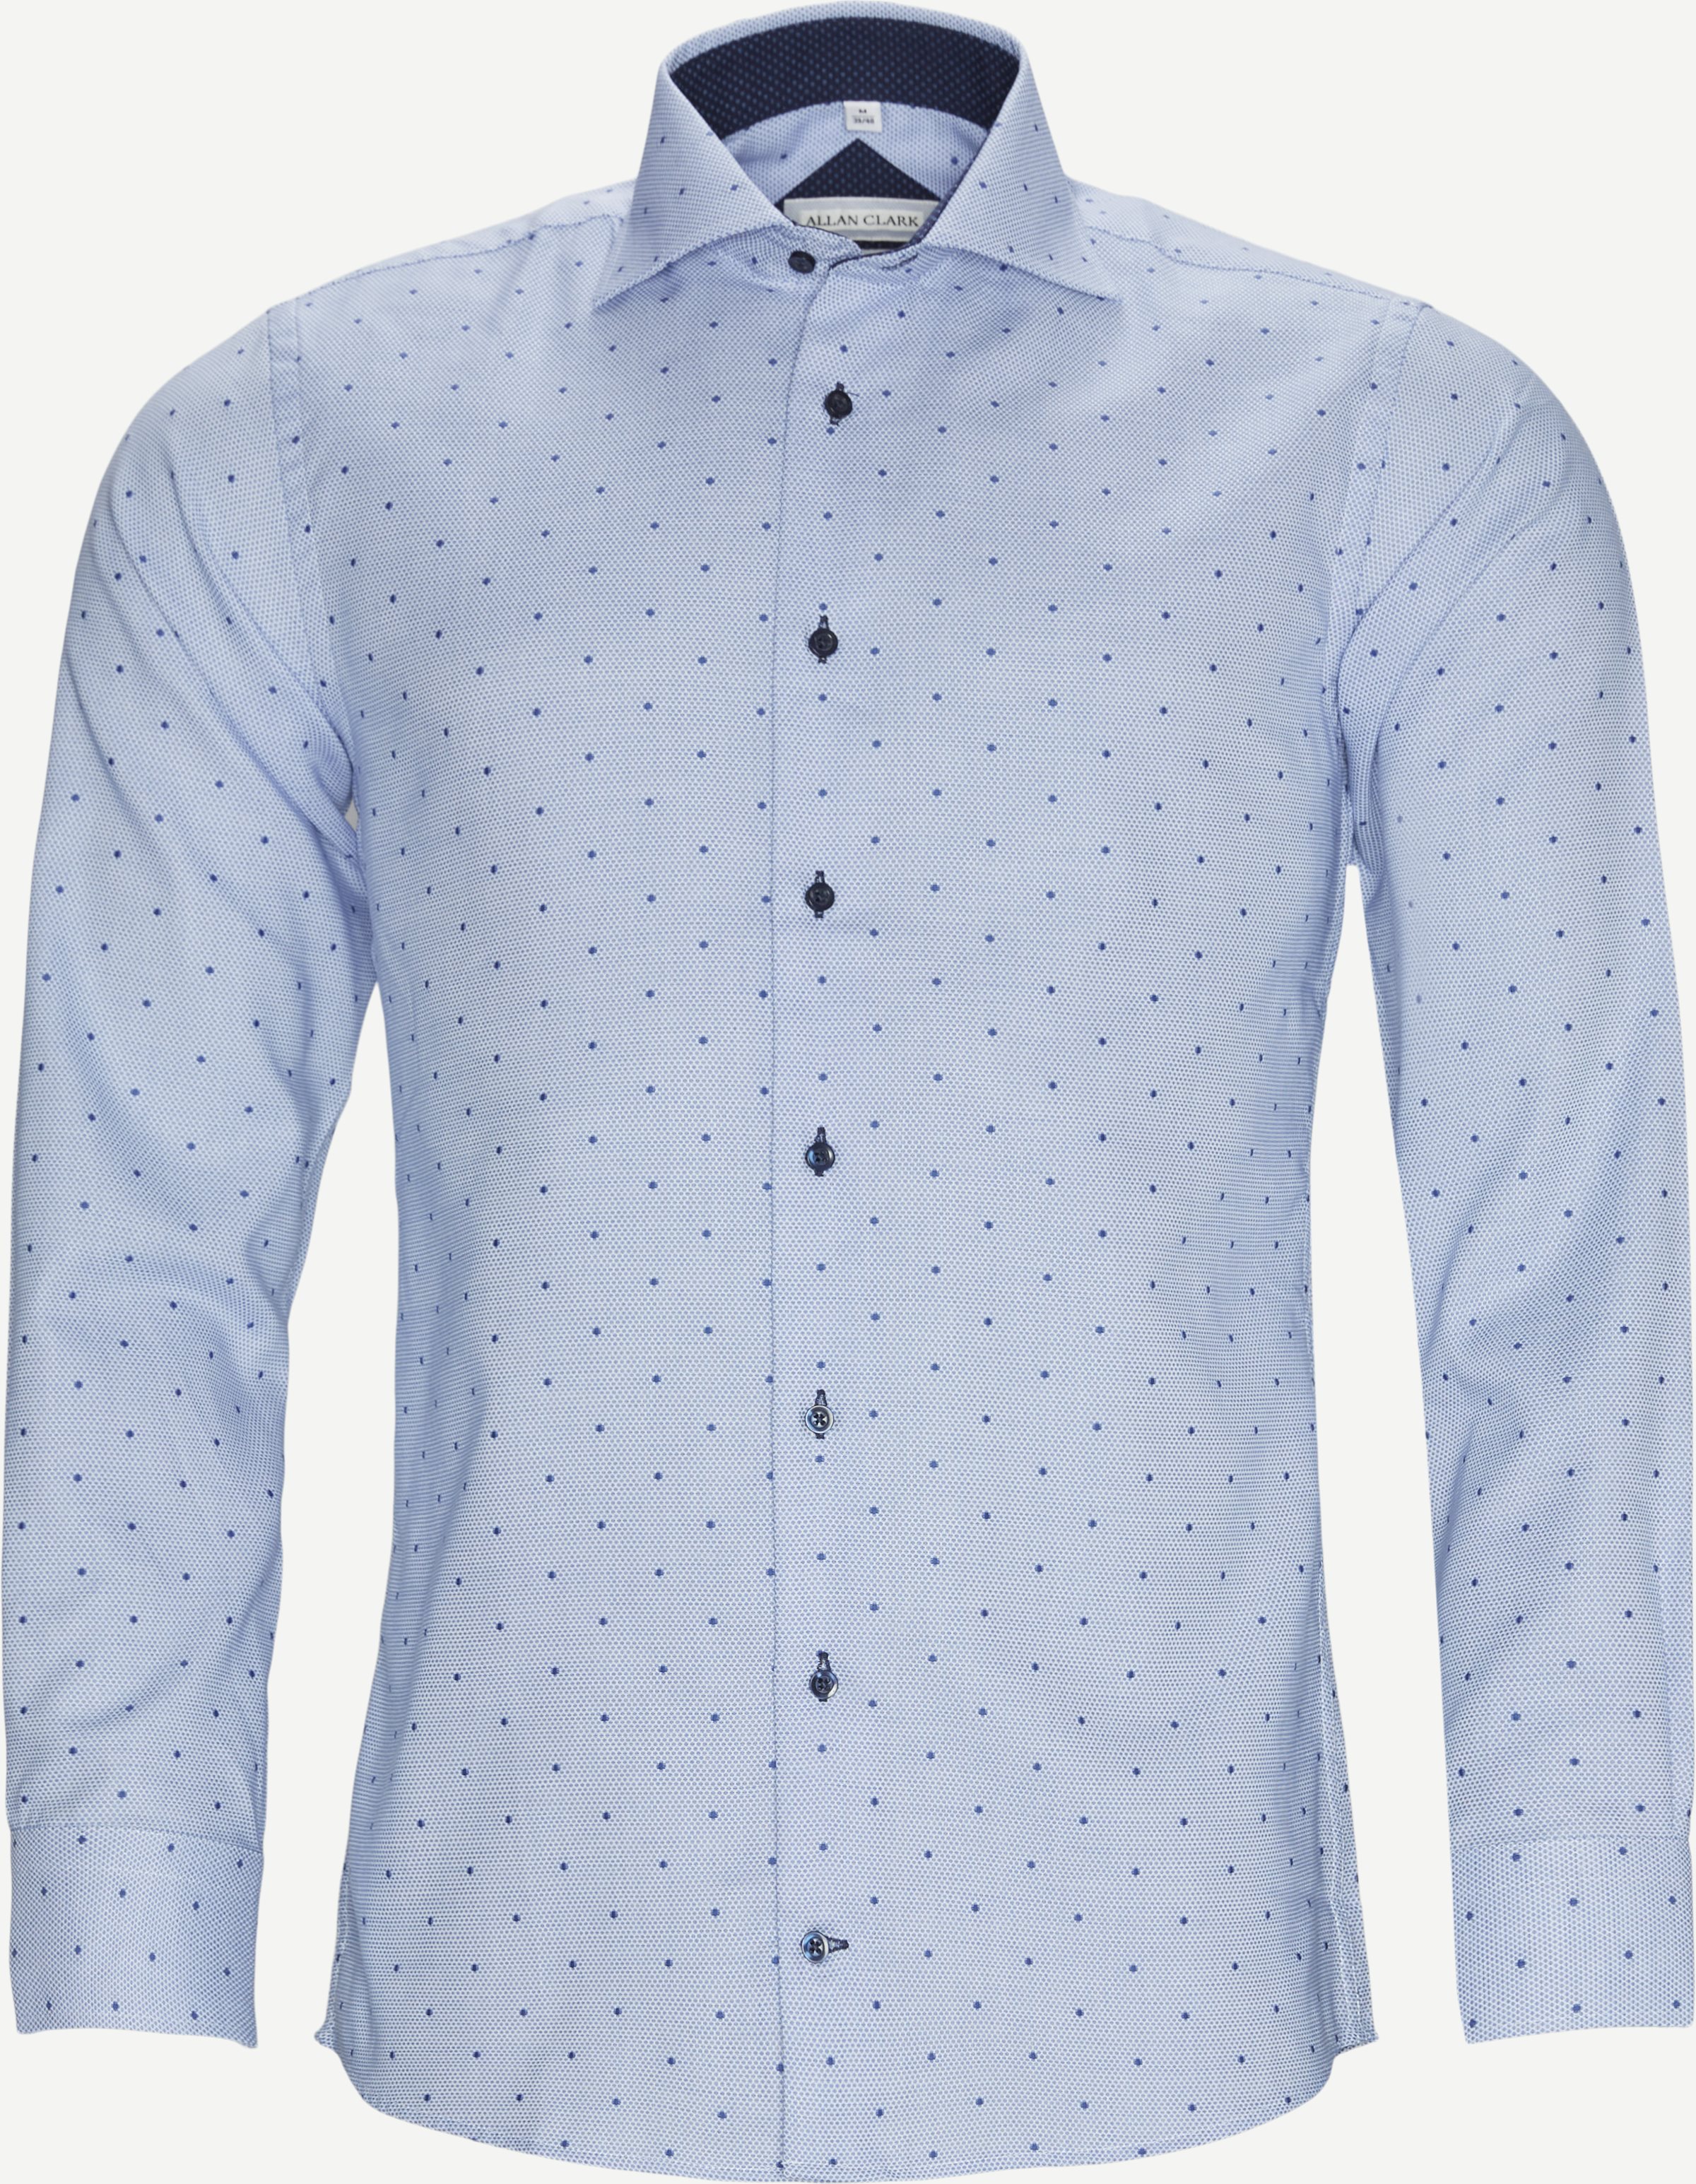 Balmoral Skjorte - Skjorter - Blå